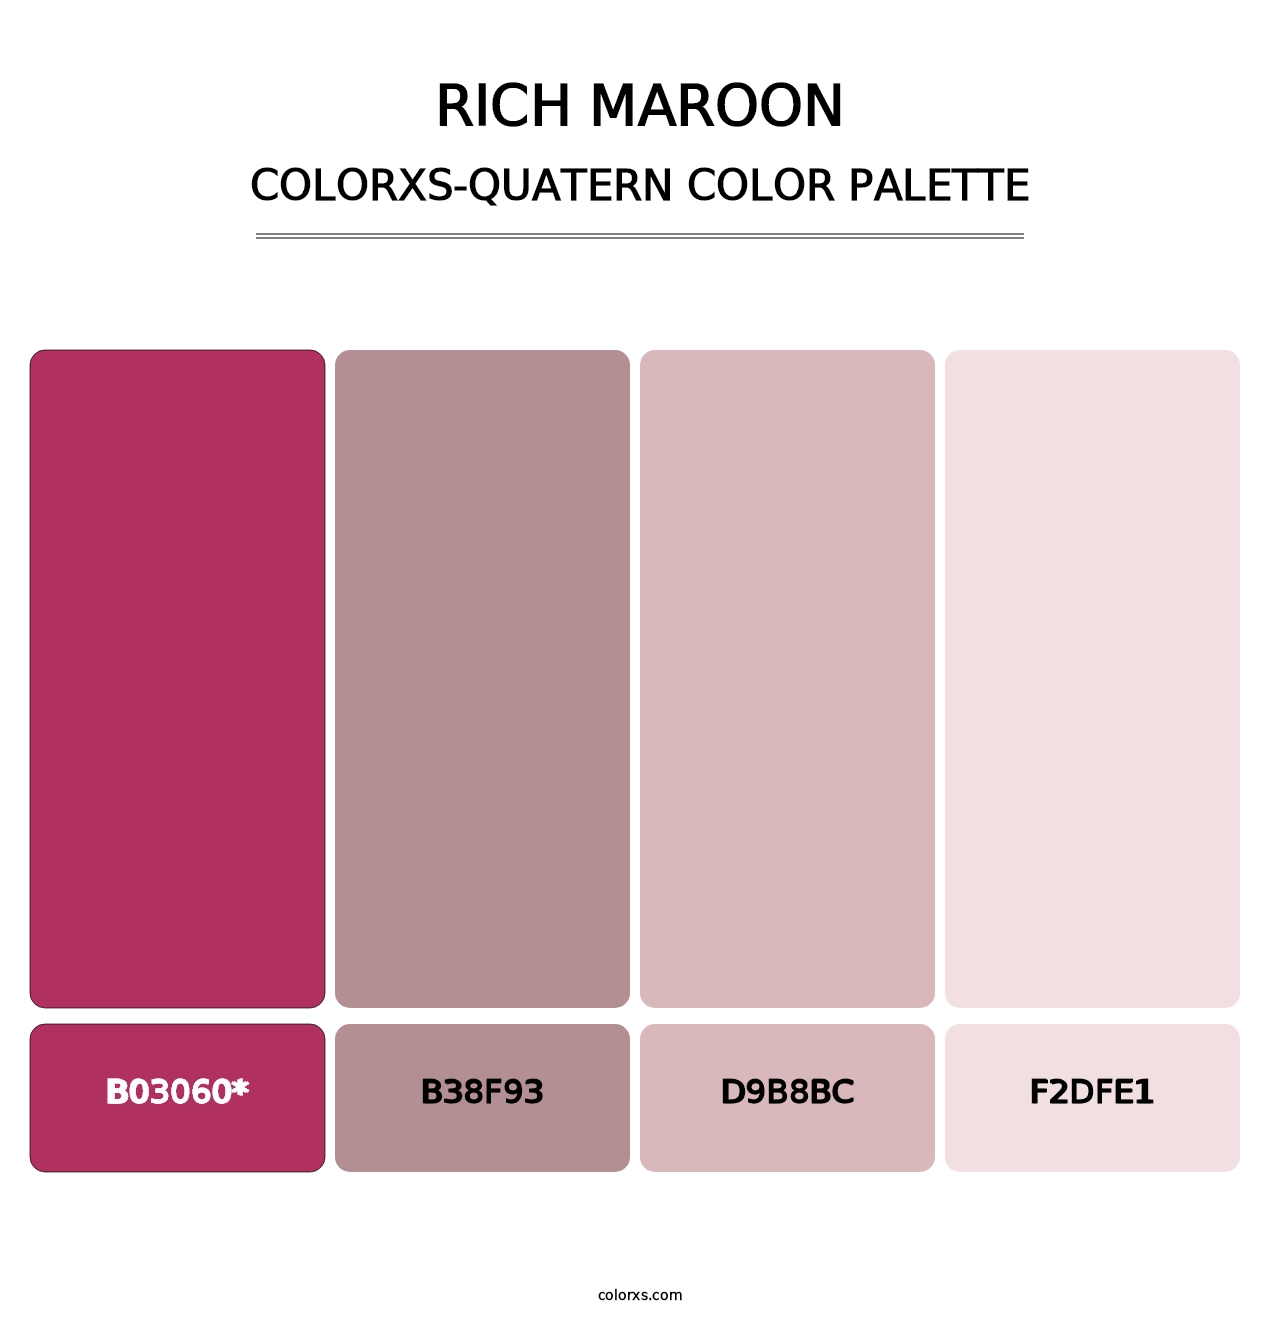 Rich Maroon - Colorxs Quatern Palette